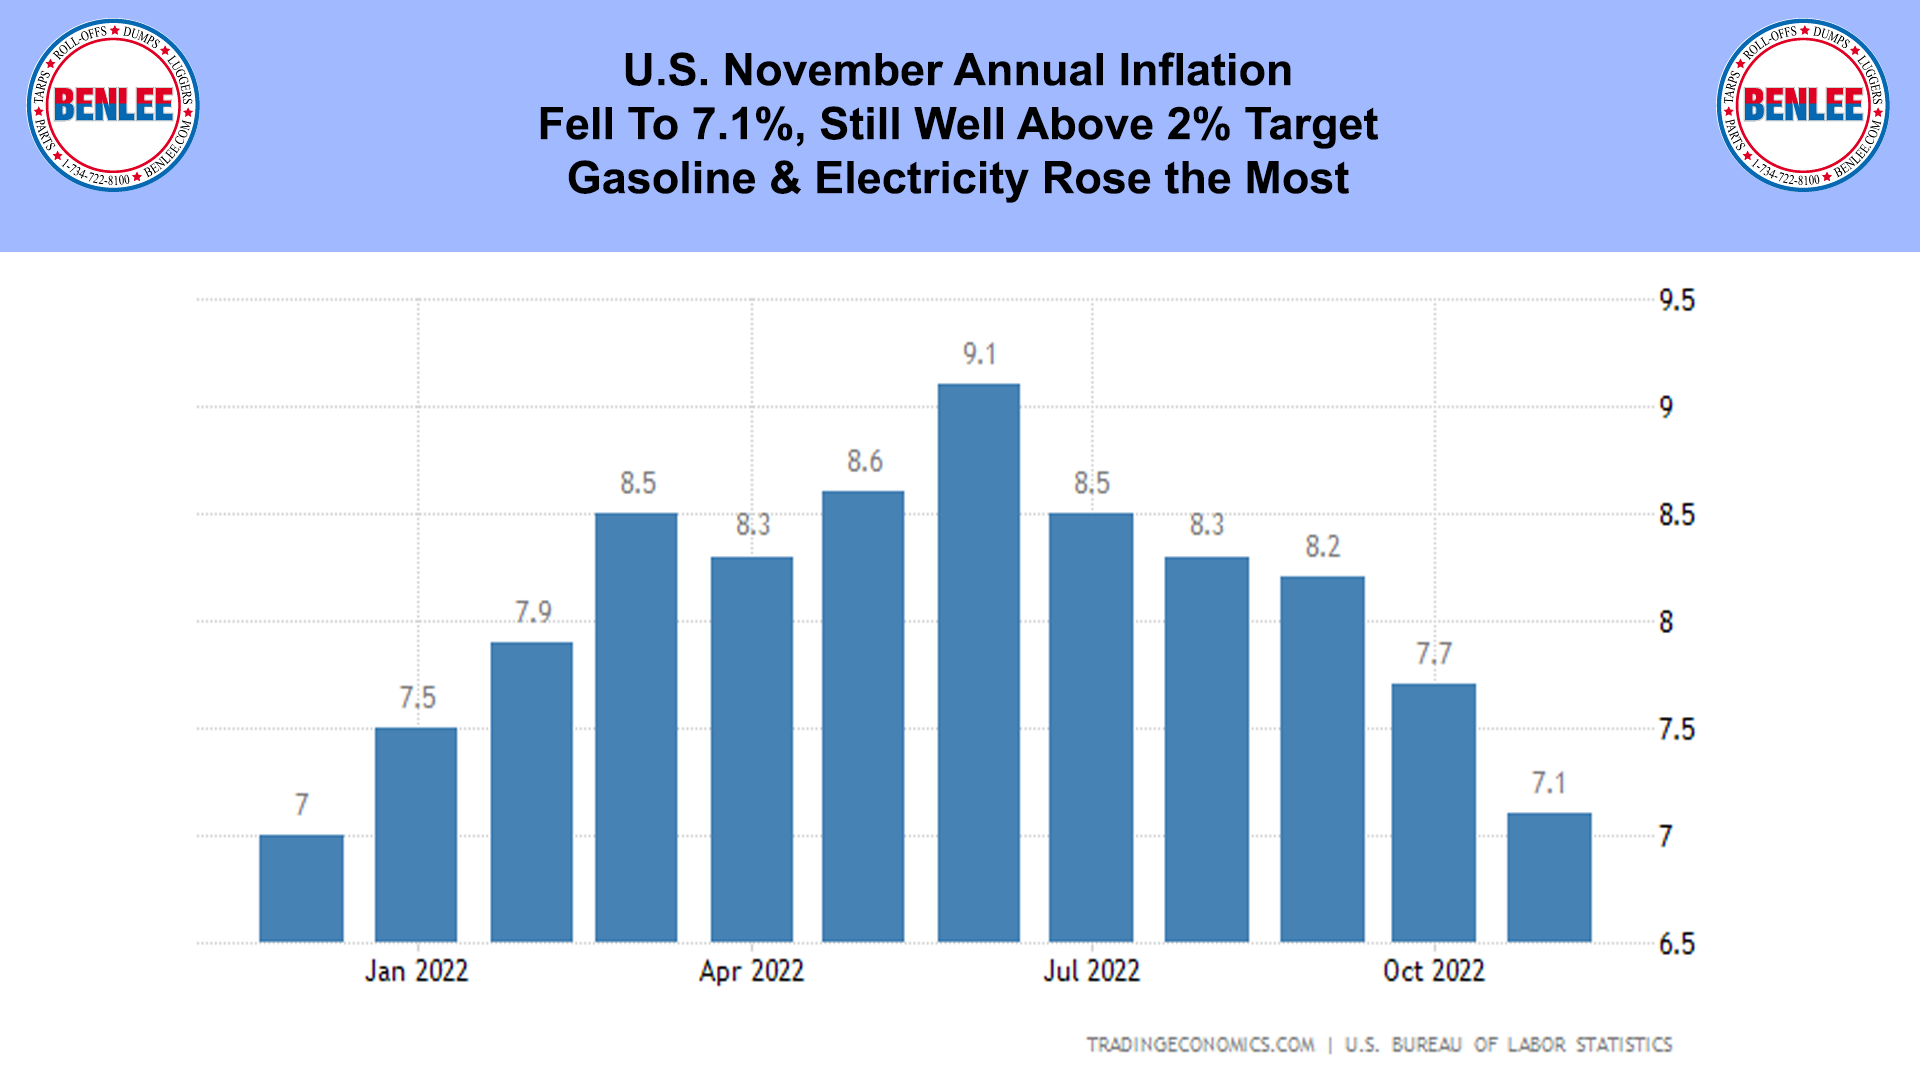 U.S. November Annual Inflation